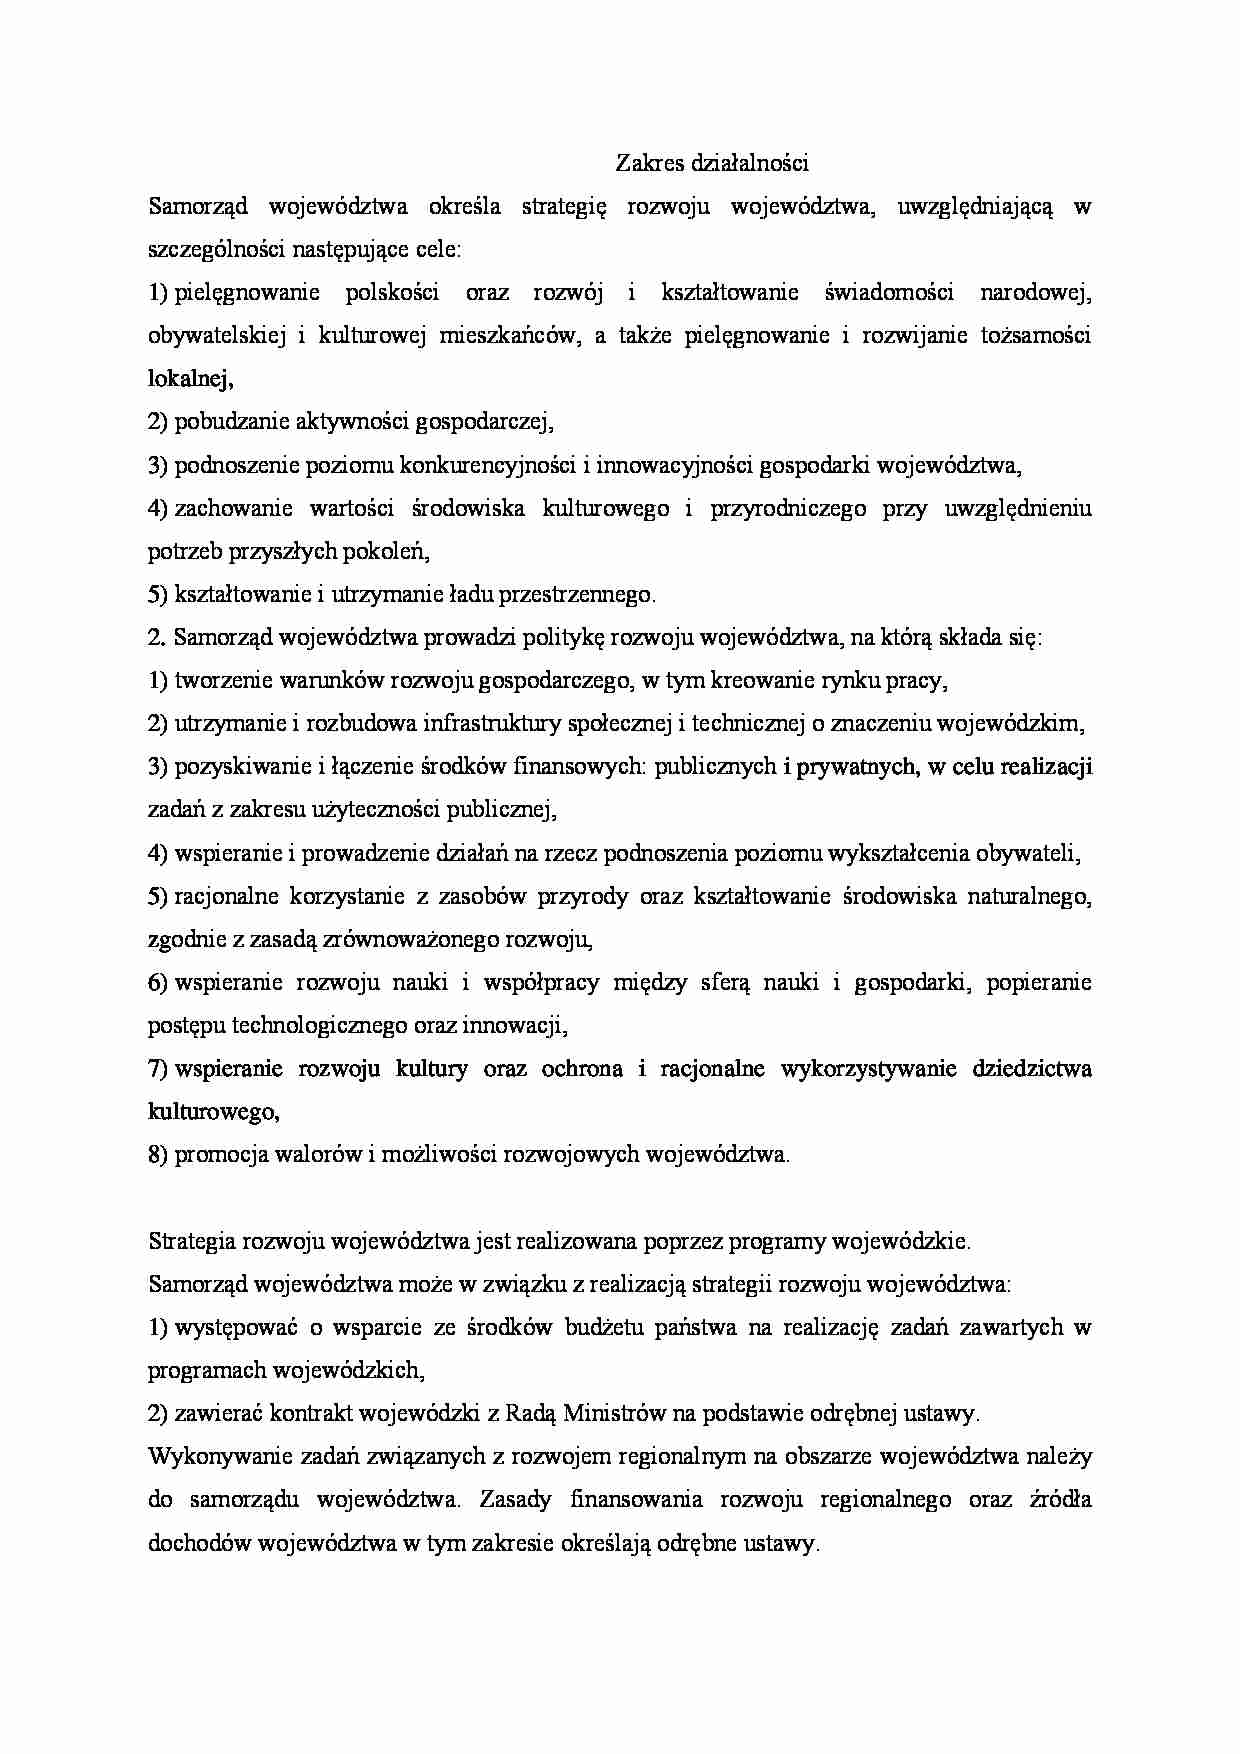 Zakres działalności samorządu województwa - strona 1